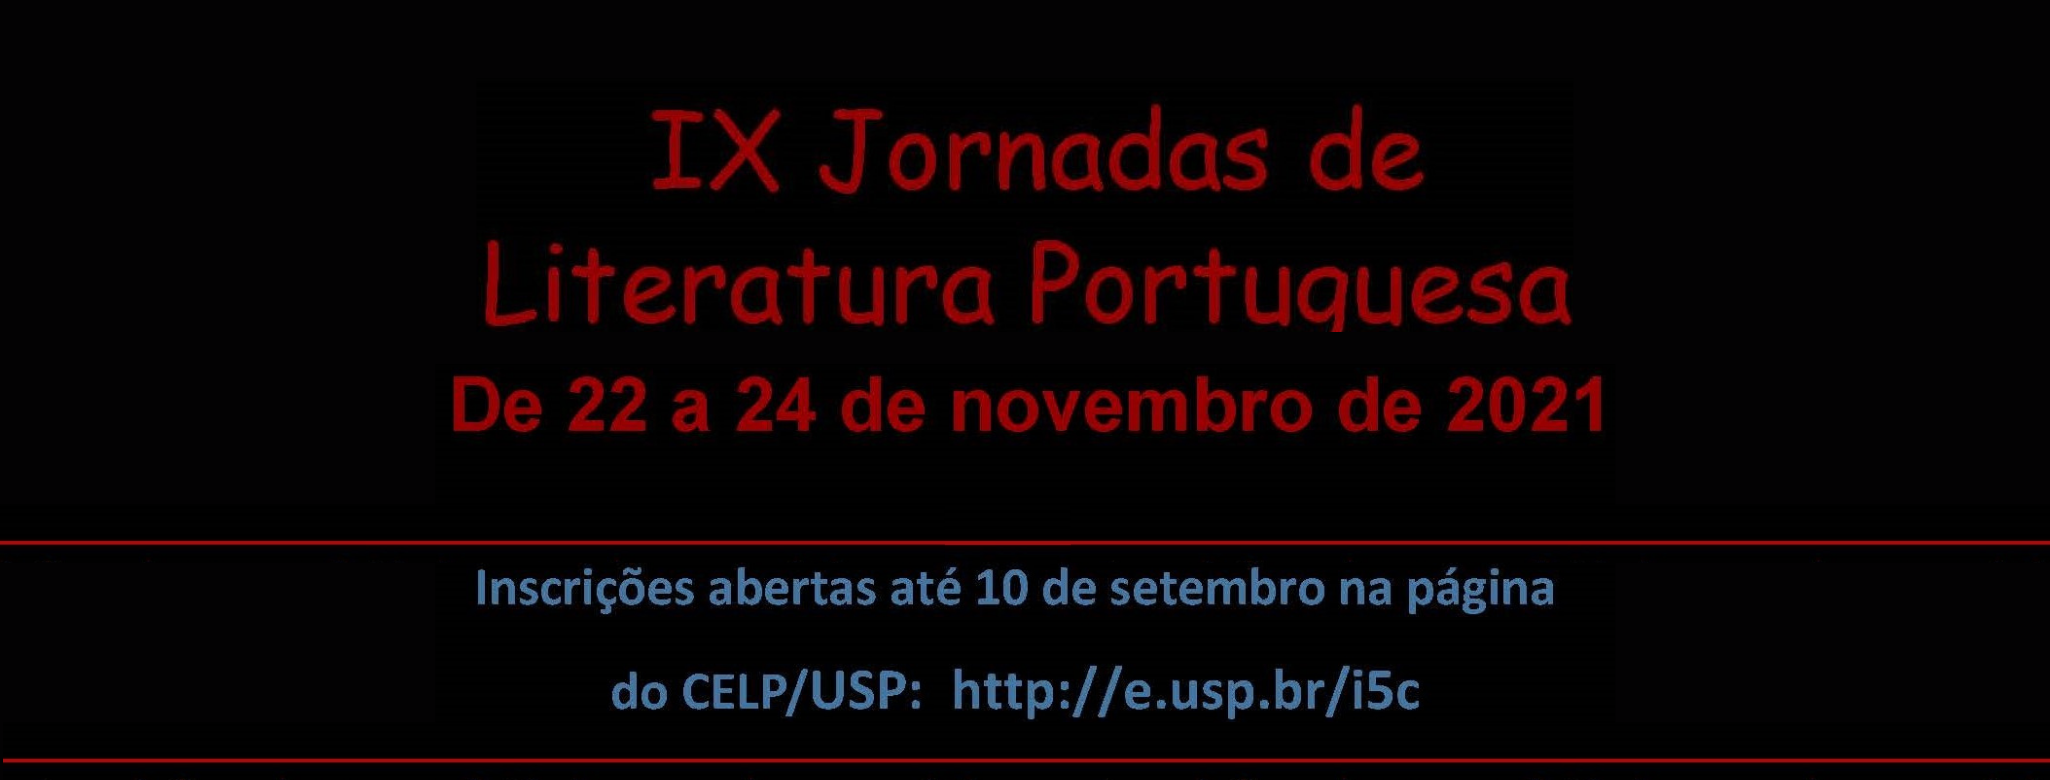 IX Jornadas de Literatura Portuguesa